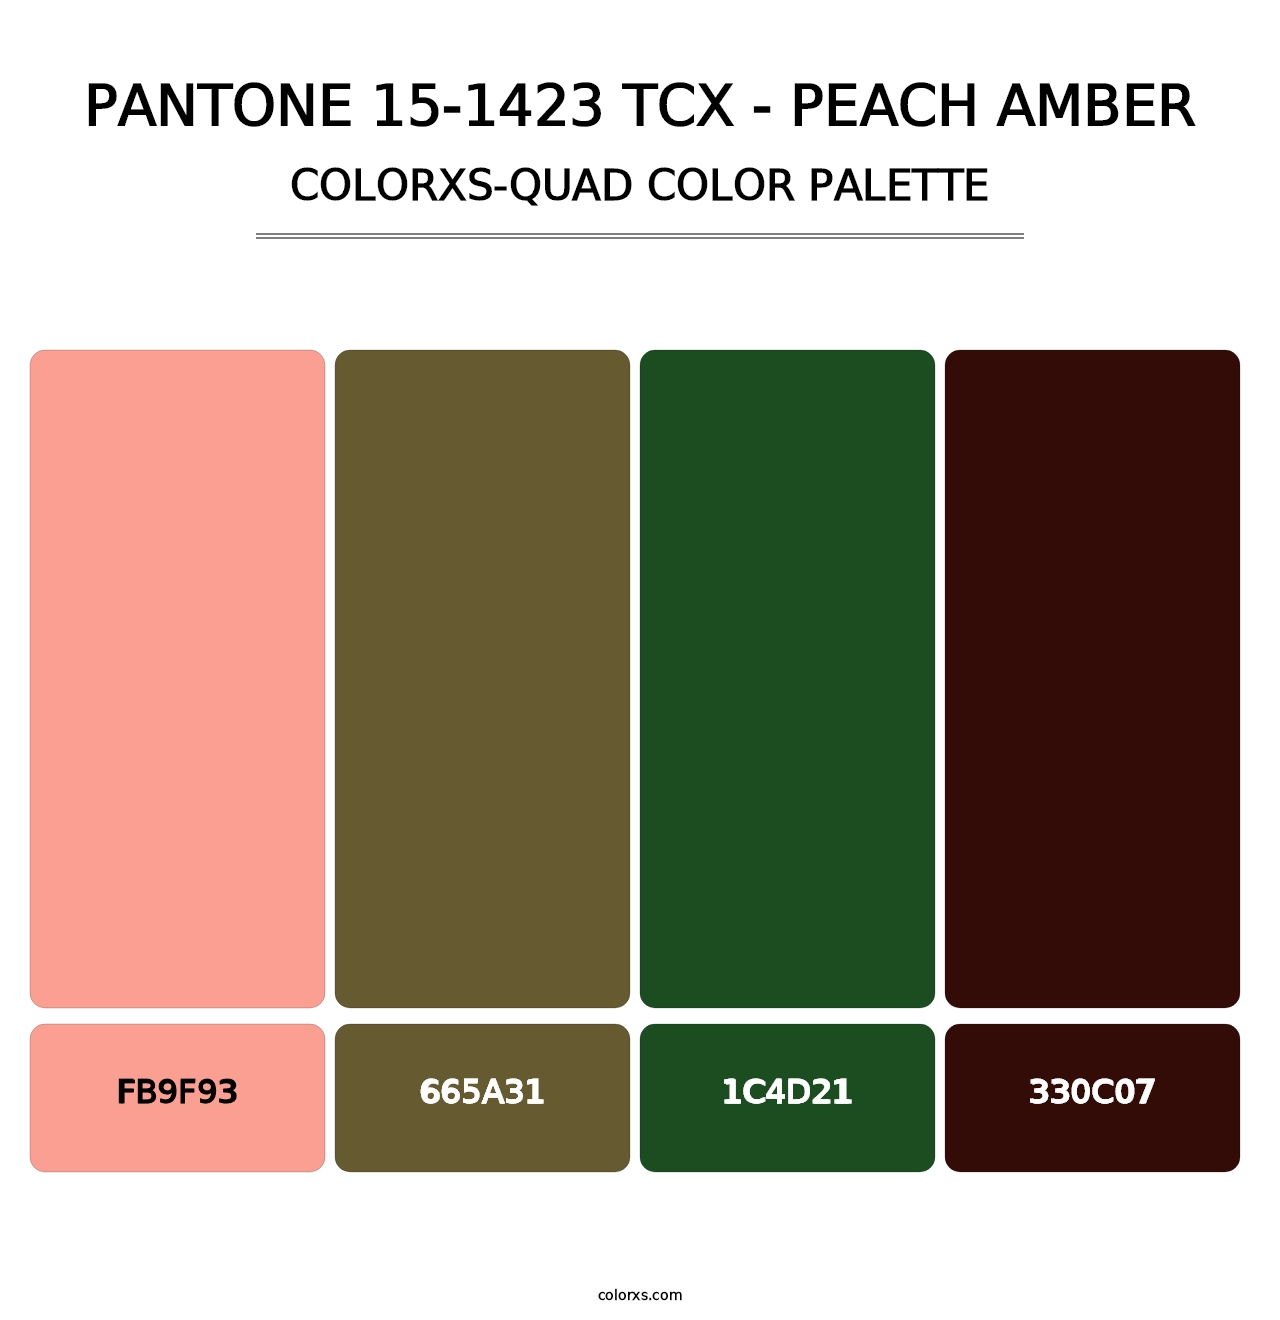 PANTONE 15-1423 TCX - Peach Amber - Colorxs Quad Palette